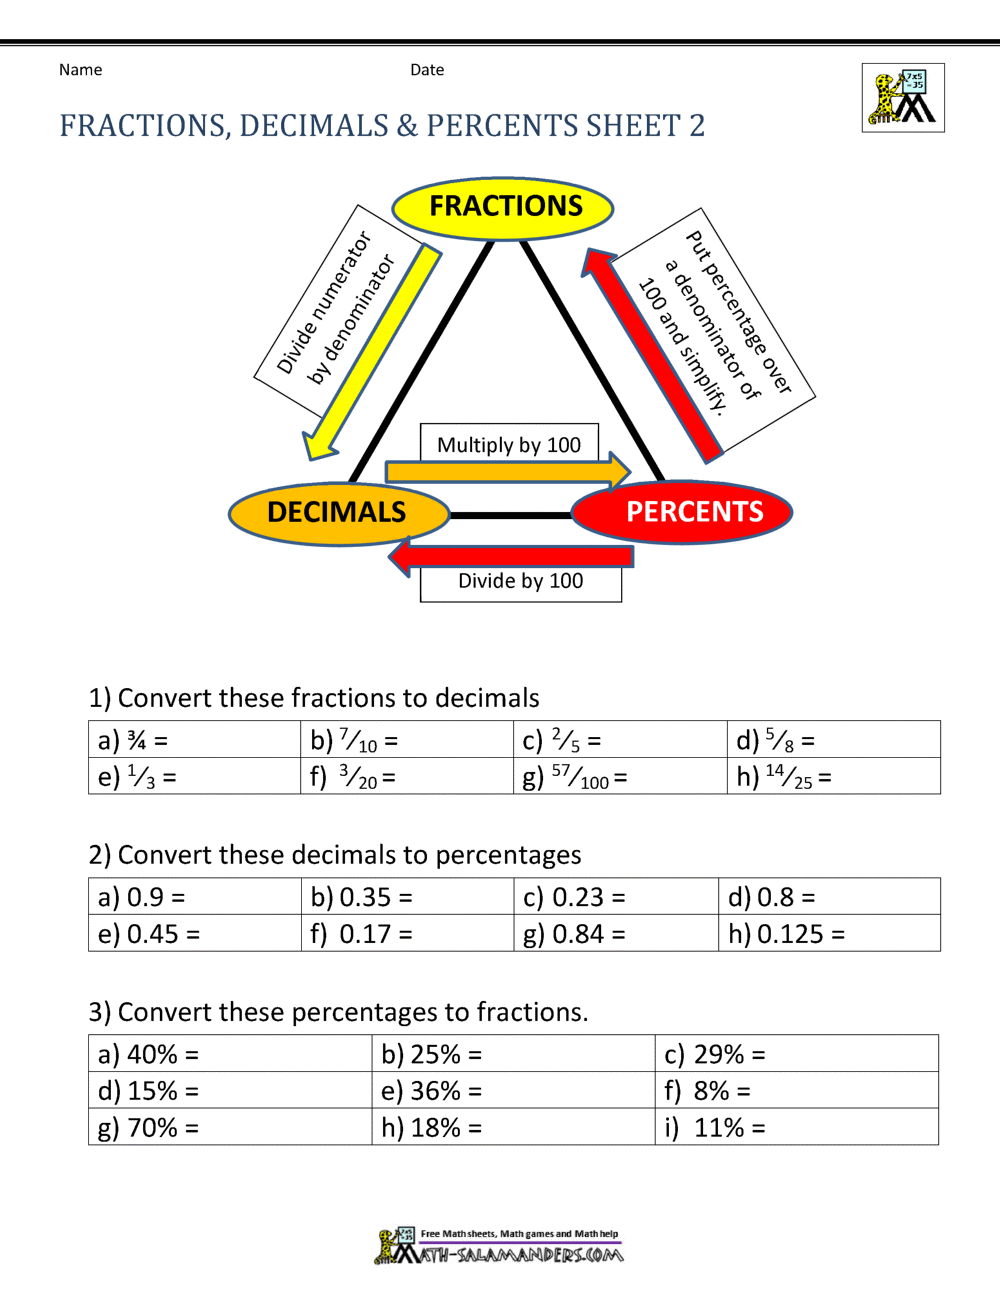 Fractions Decimals Percents Worksheets Pertaining To Comparing Fractions And Decimals Worksheet